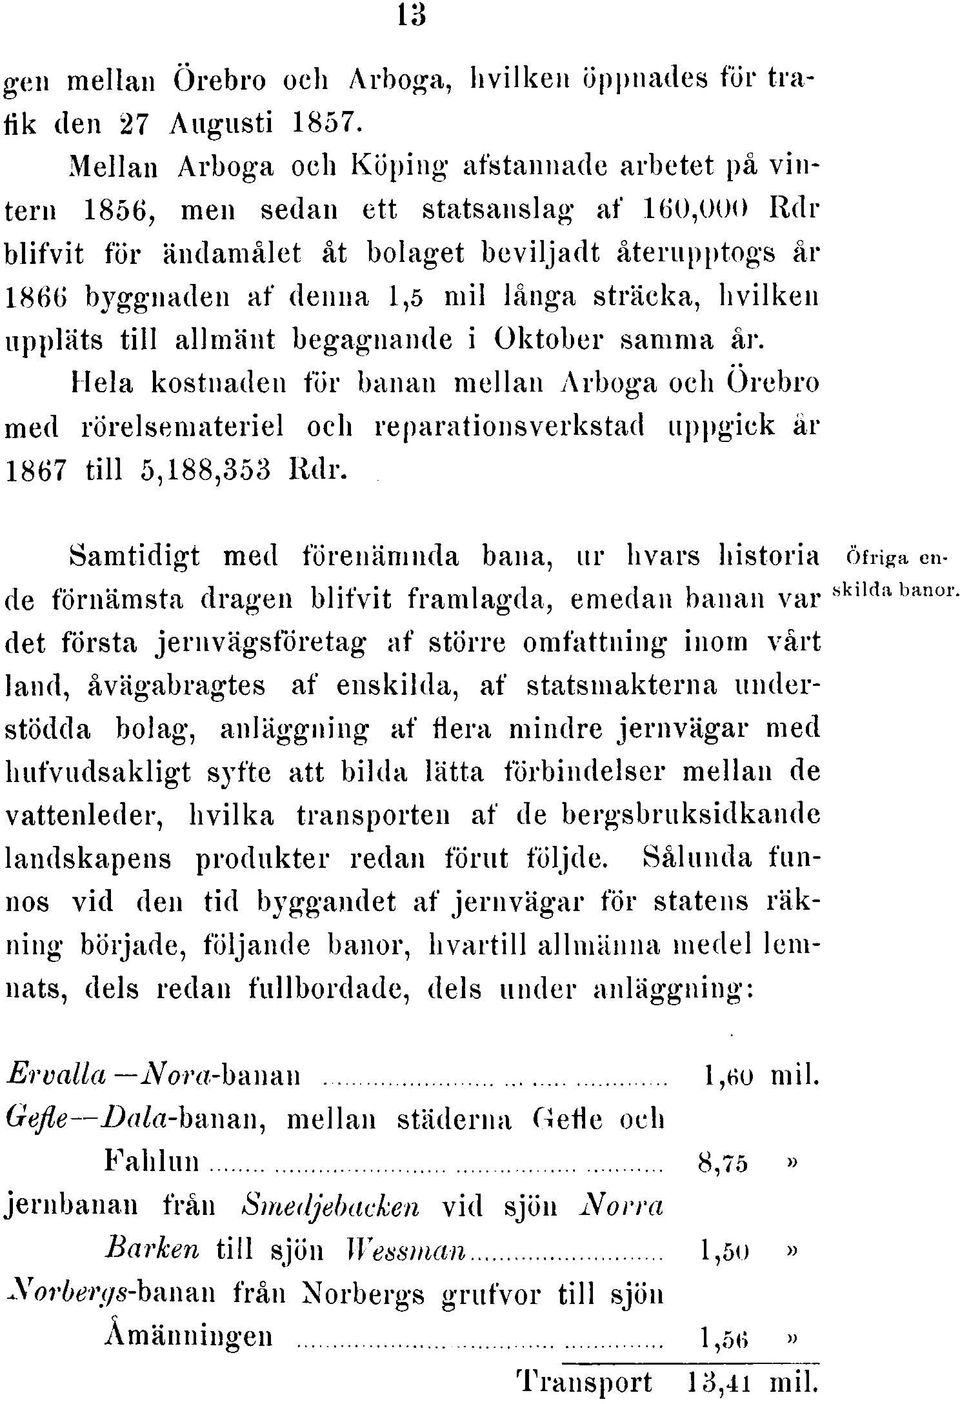 sträcka, hvilken uppläts till allmänt begagnande i Oktober samma år. Hela kostnaden för banan mellan Arboga och Örebro med rörelsemateriel och reparationsverkstad uppgick år 1867 till 5,188,353 Rdr.